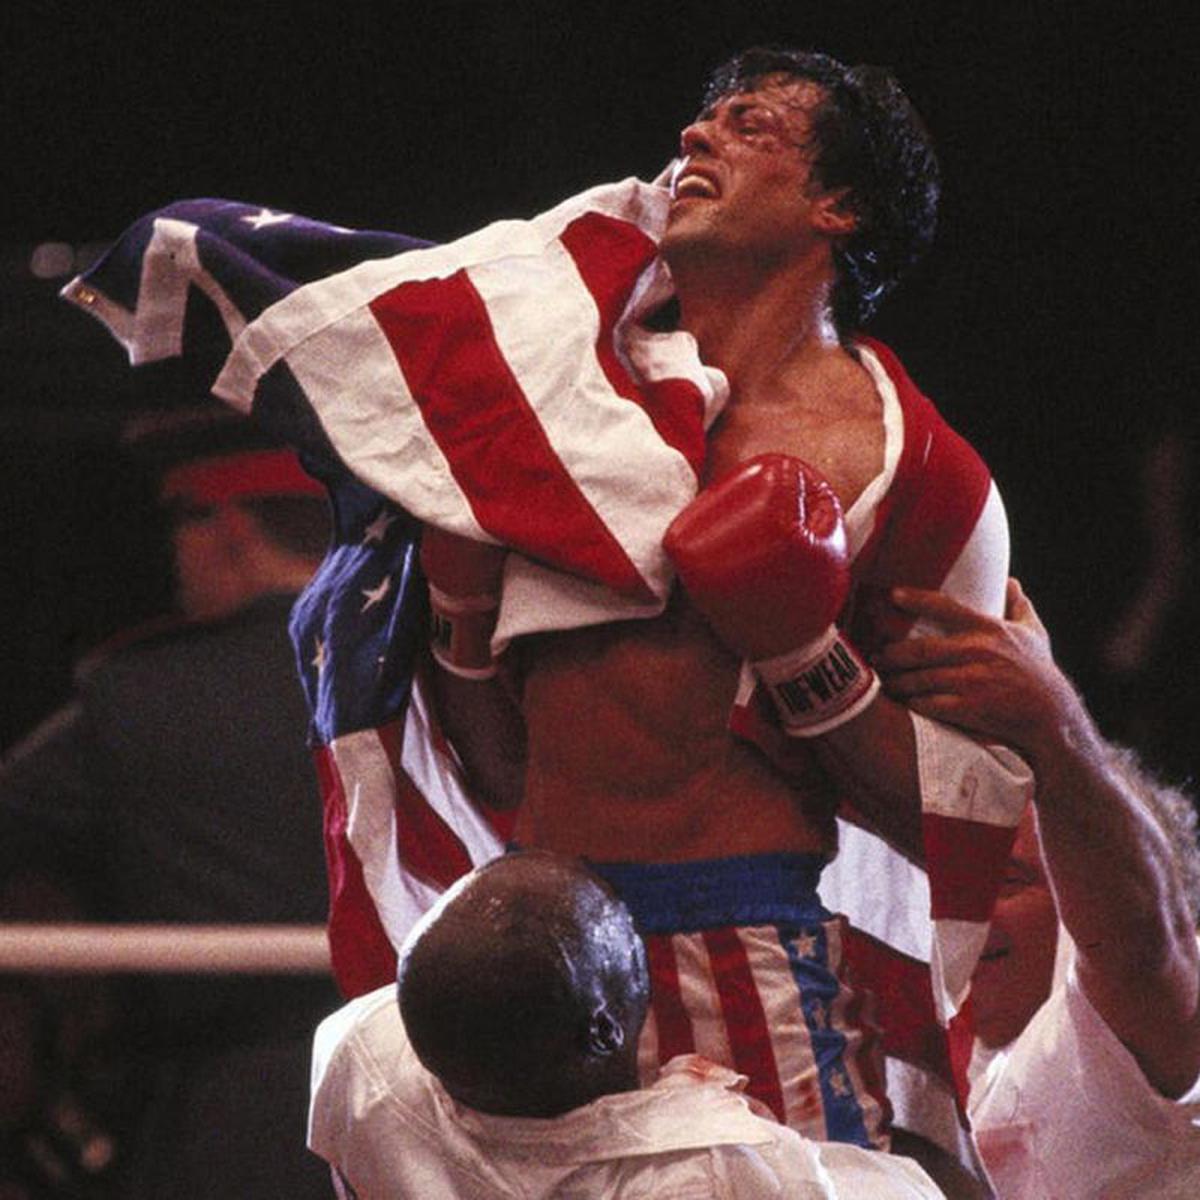 Sylvester Stallone y los valores cristianos detrás de Rocky Balboa